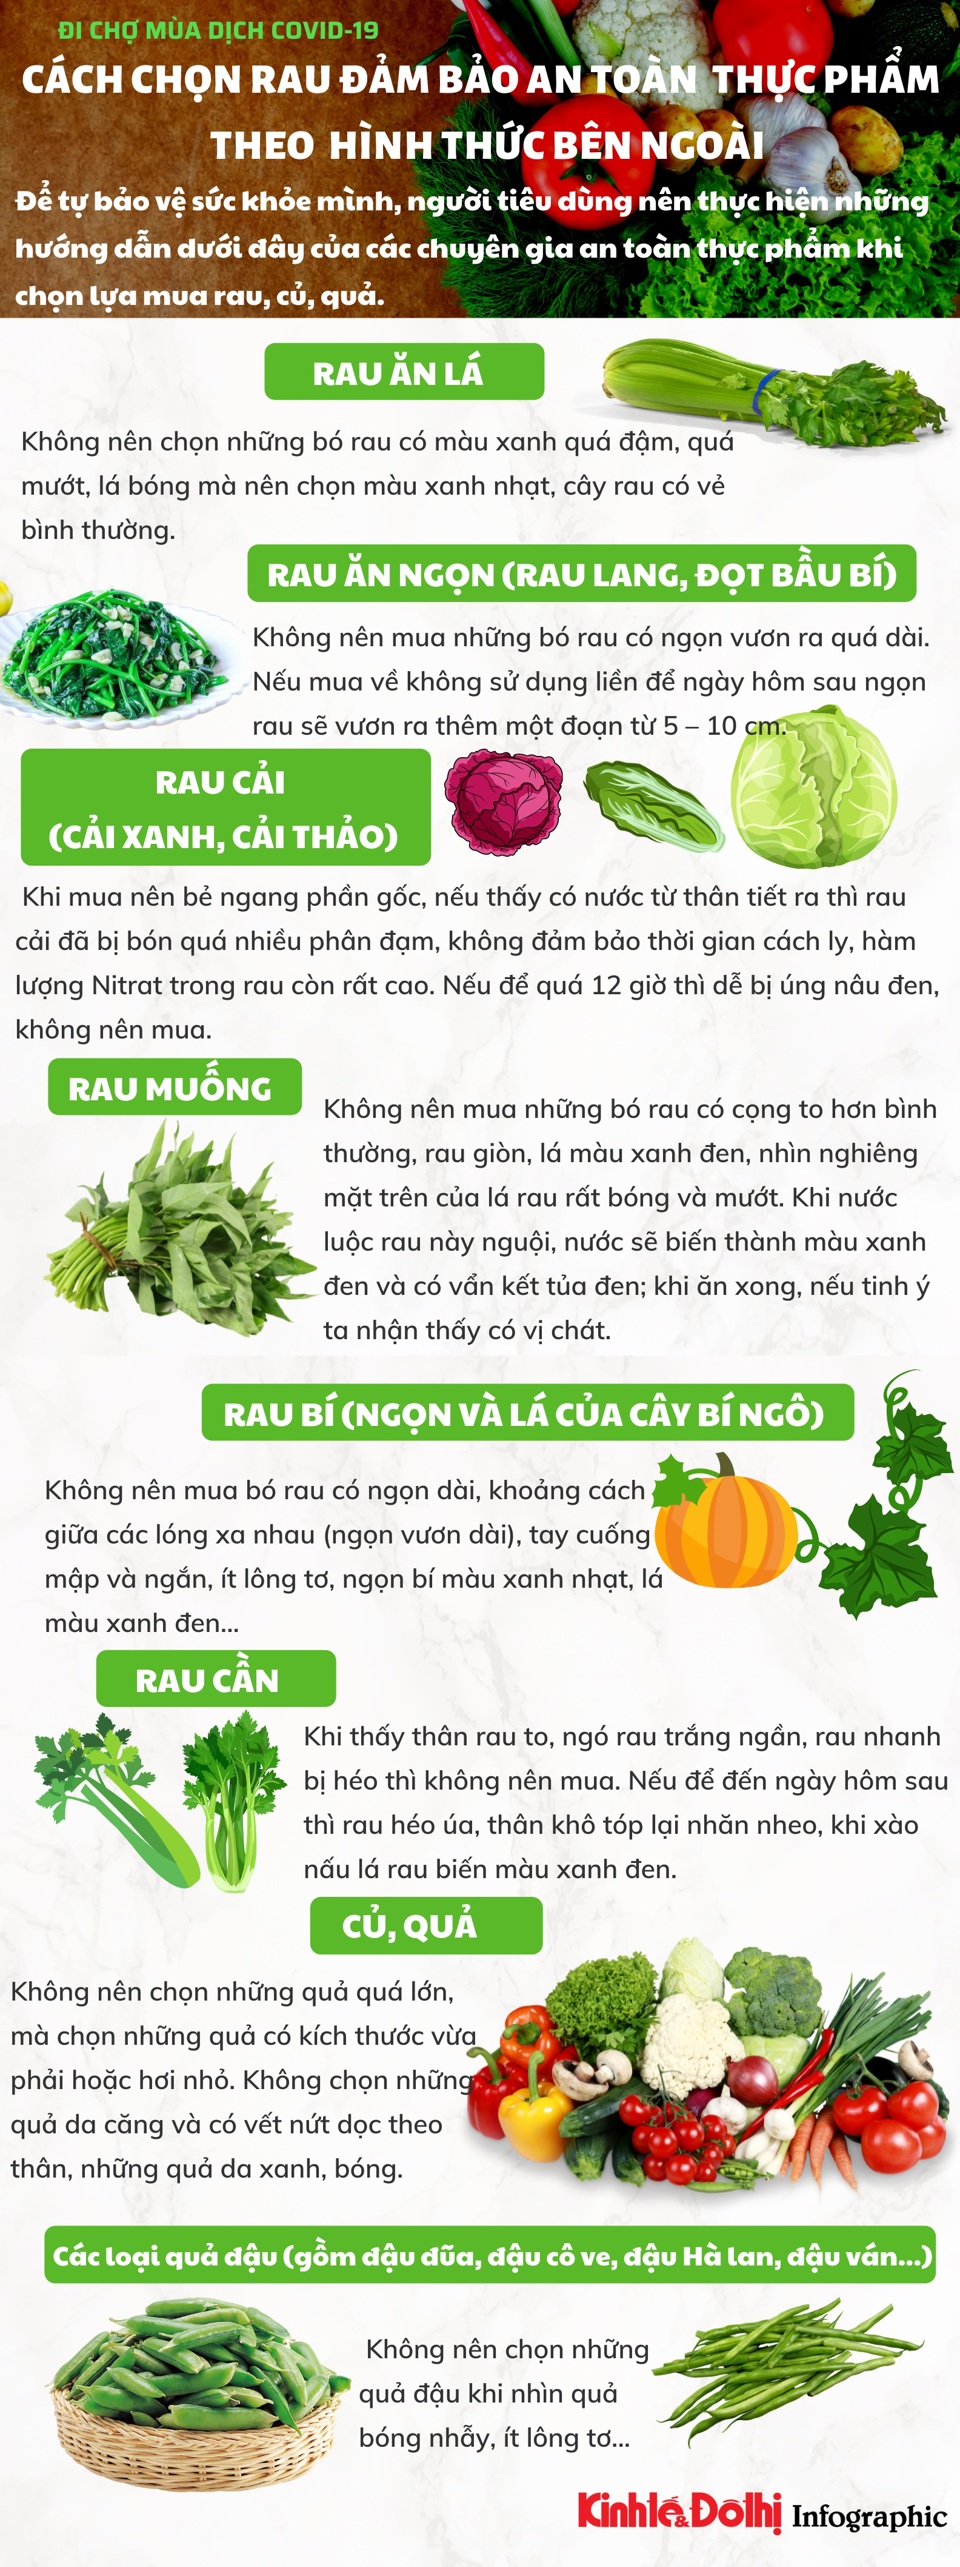 [Infographic] Cách chọn rau, củ, quả đảm bảo an toàn thực phẩm chỉ cần nhìn bên ngoài - Ảnh 1